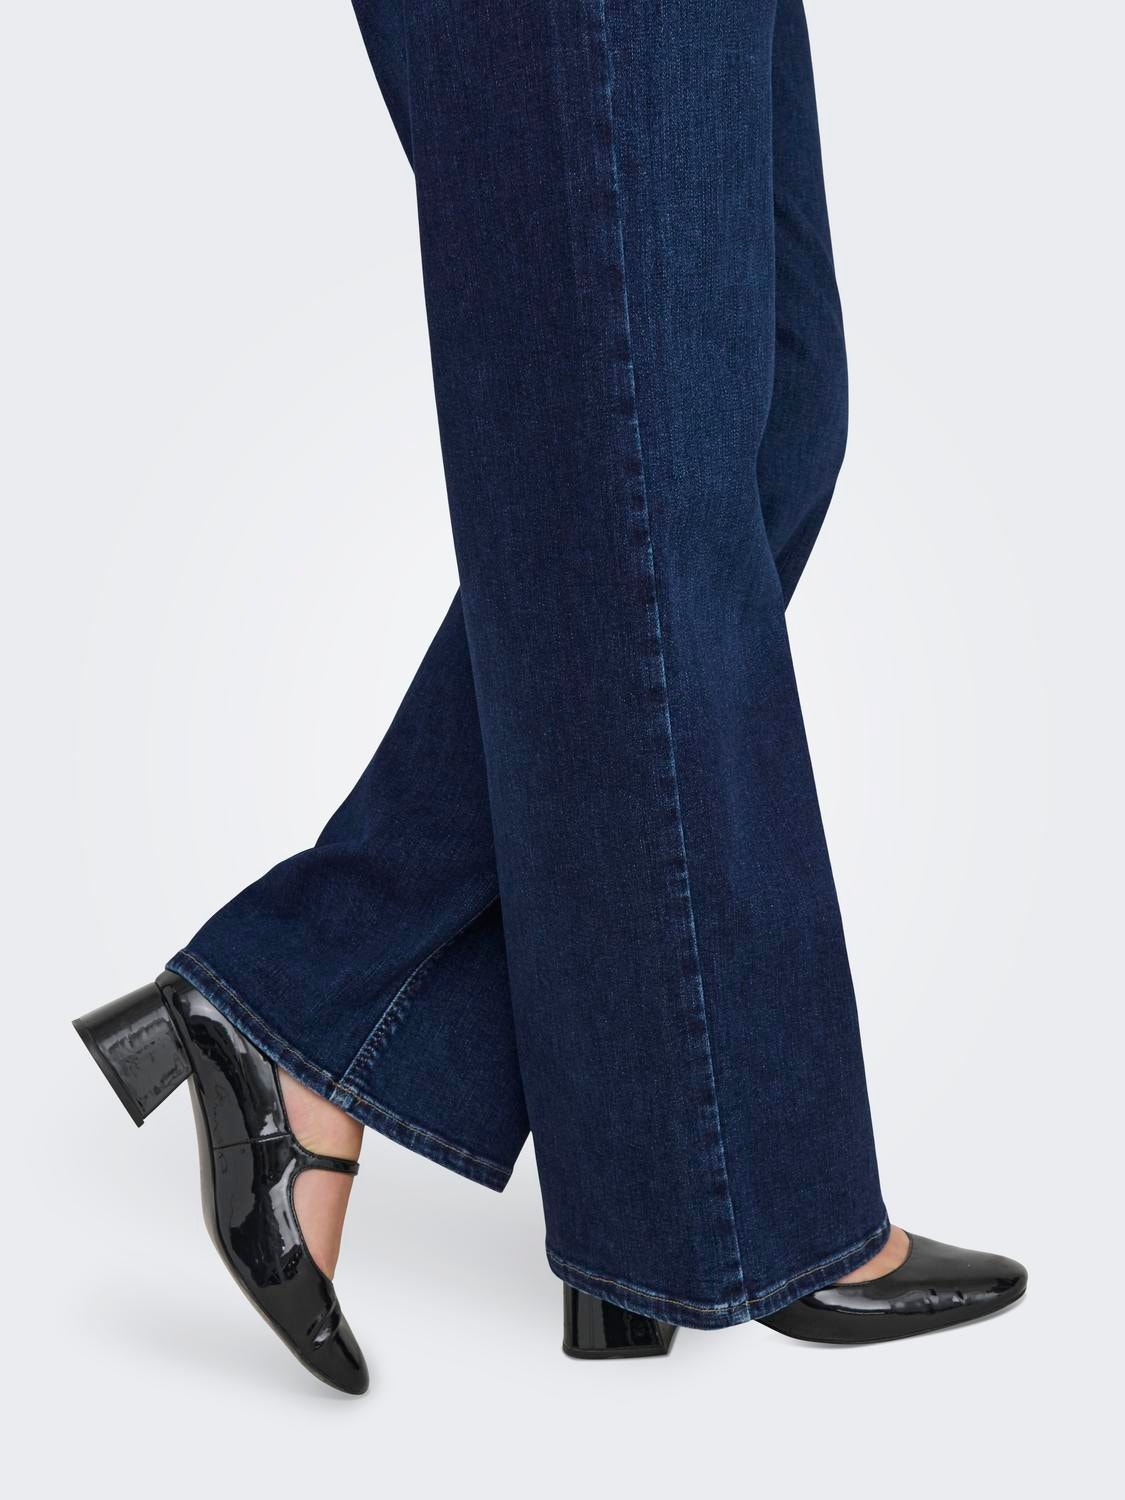 ONLY Weiter Beinschnitt Hohe Taille Curve Jeans -Dark Blue Denim - 15304225